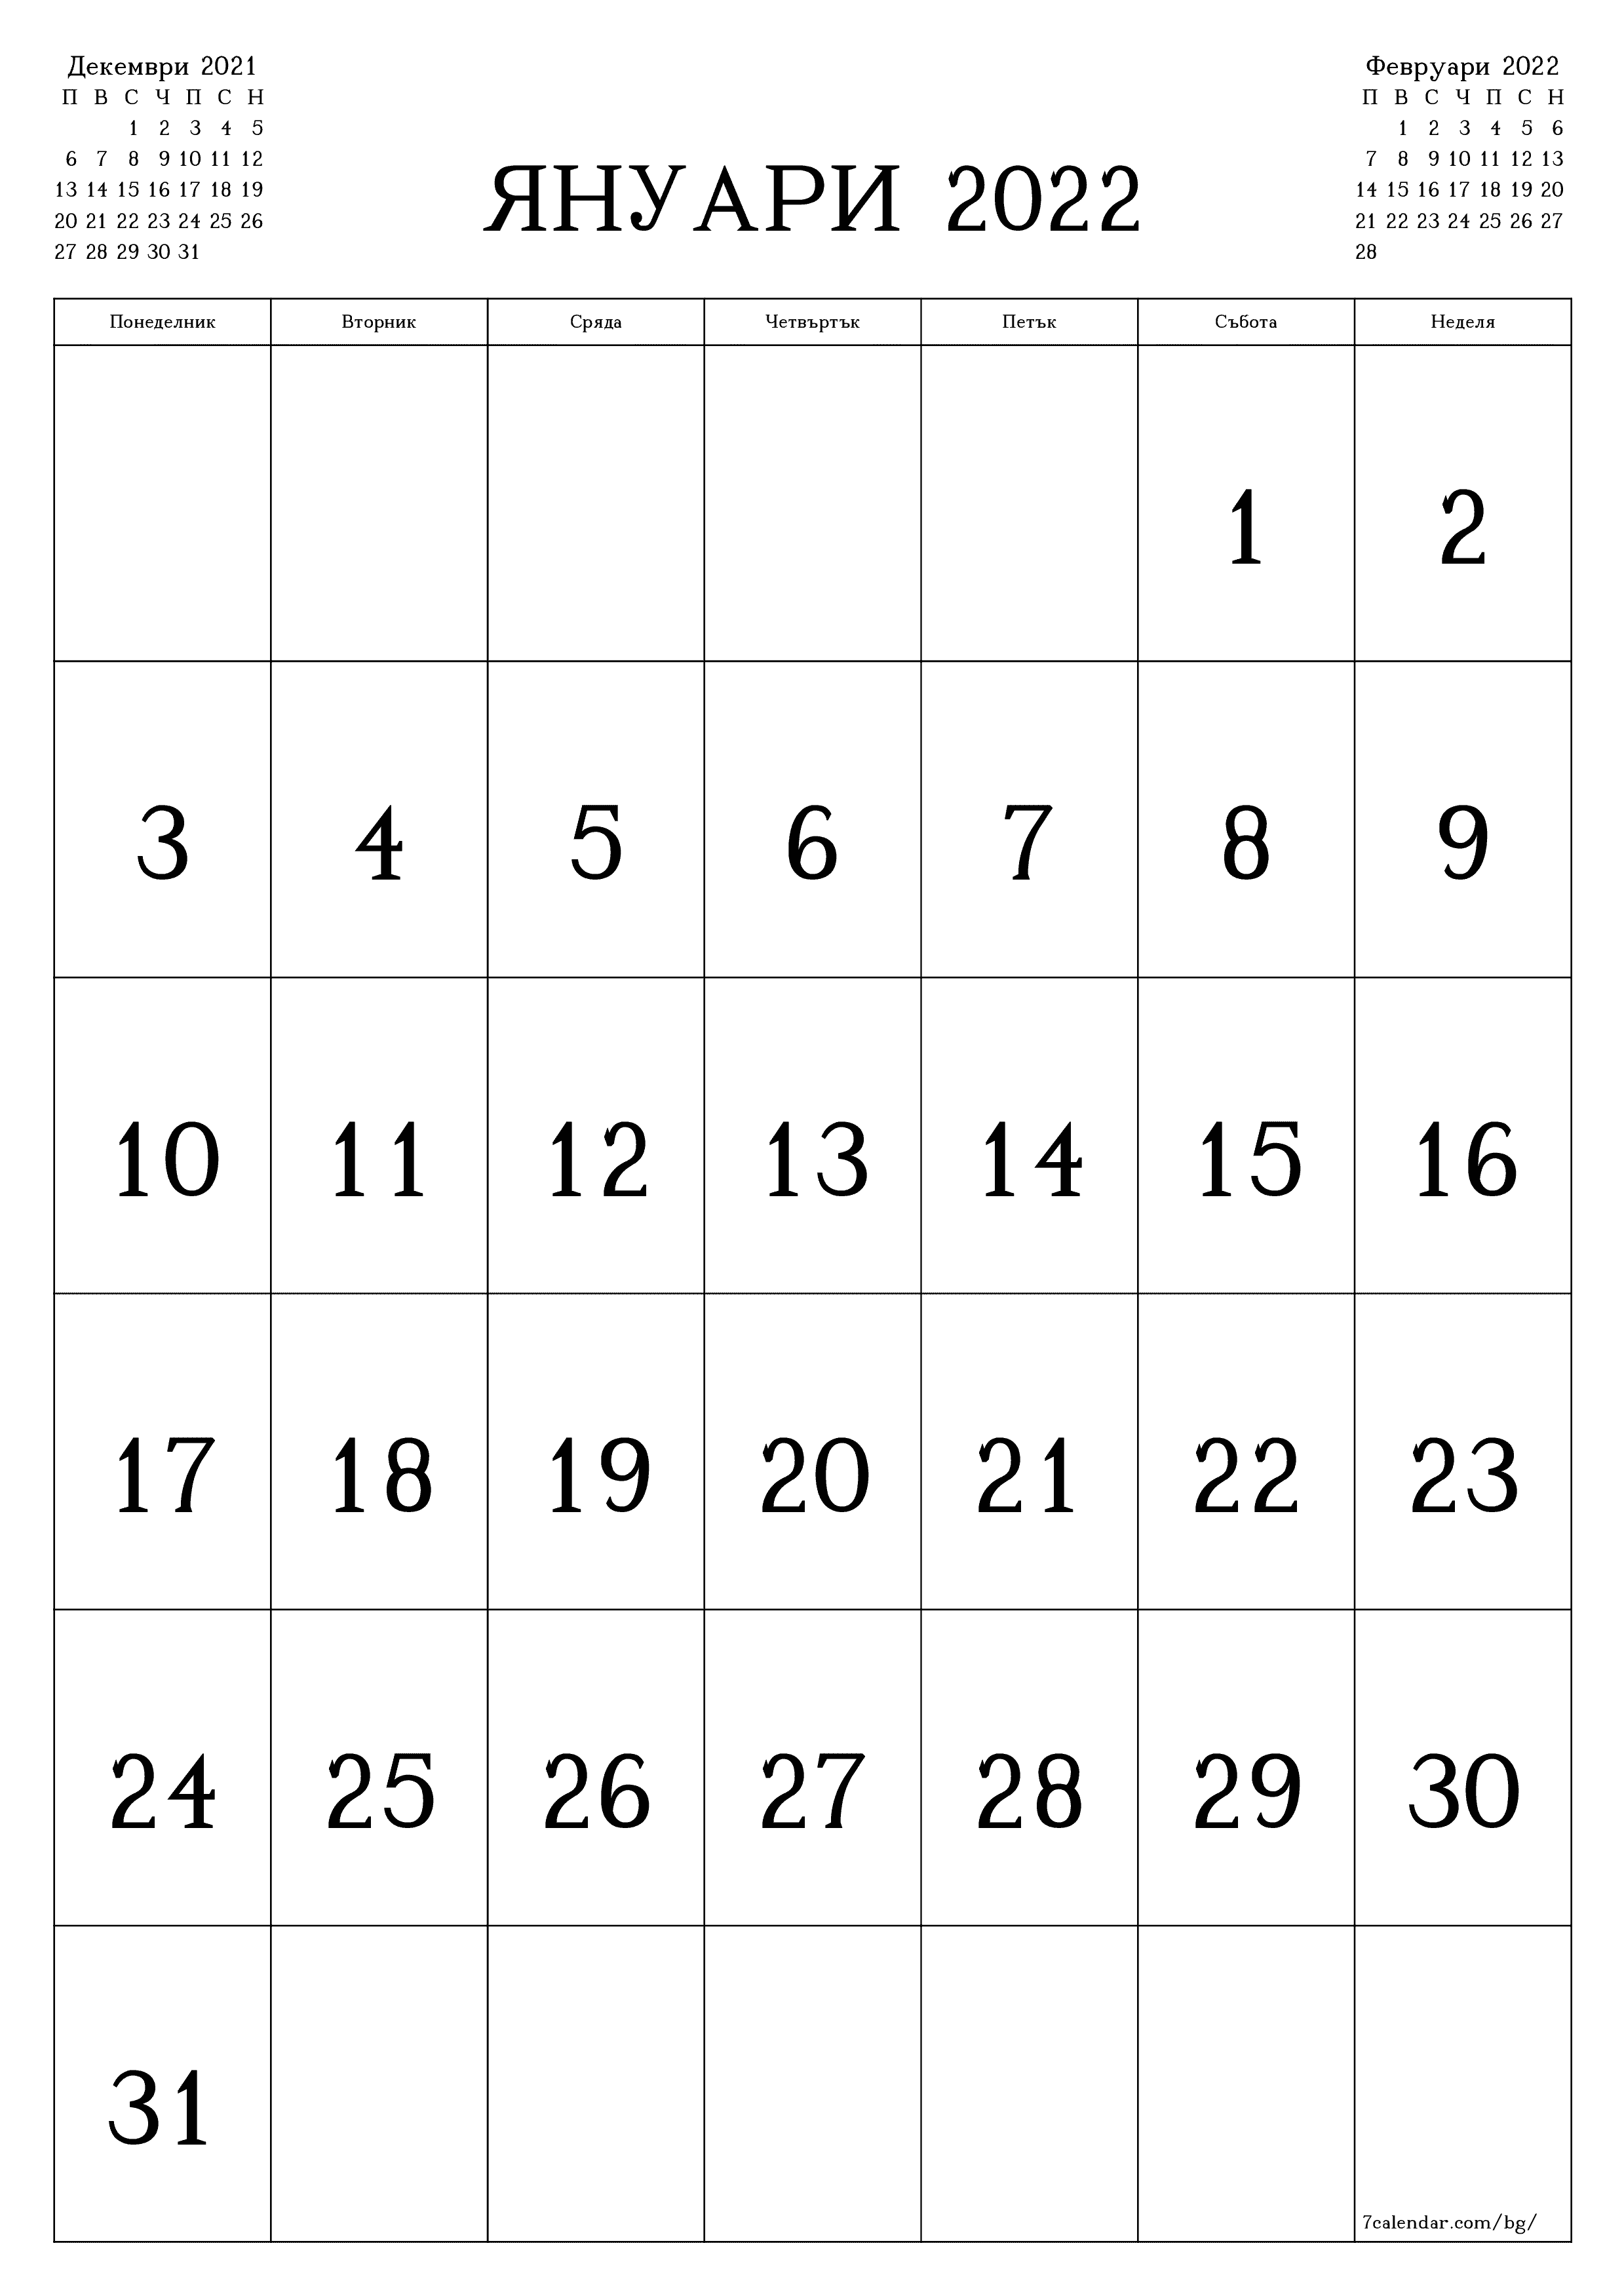 Празен месечен планер за месец Януари 2022 с бележки, запазете и отпечатайте в PDF PNG Bulgarian - 7calendar.com